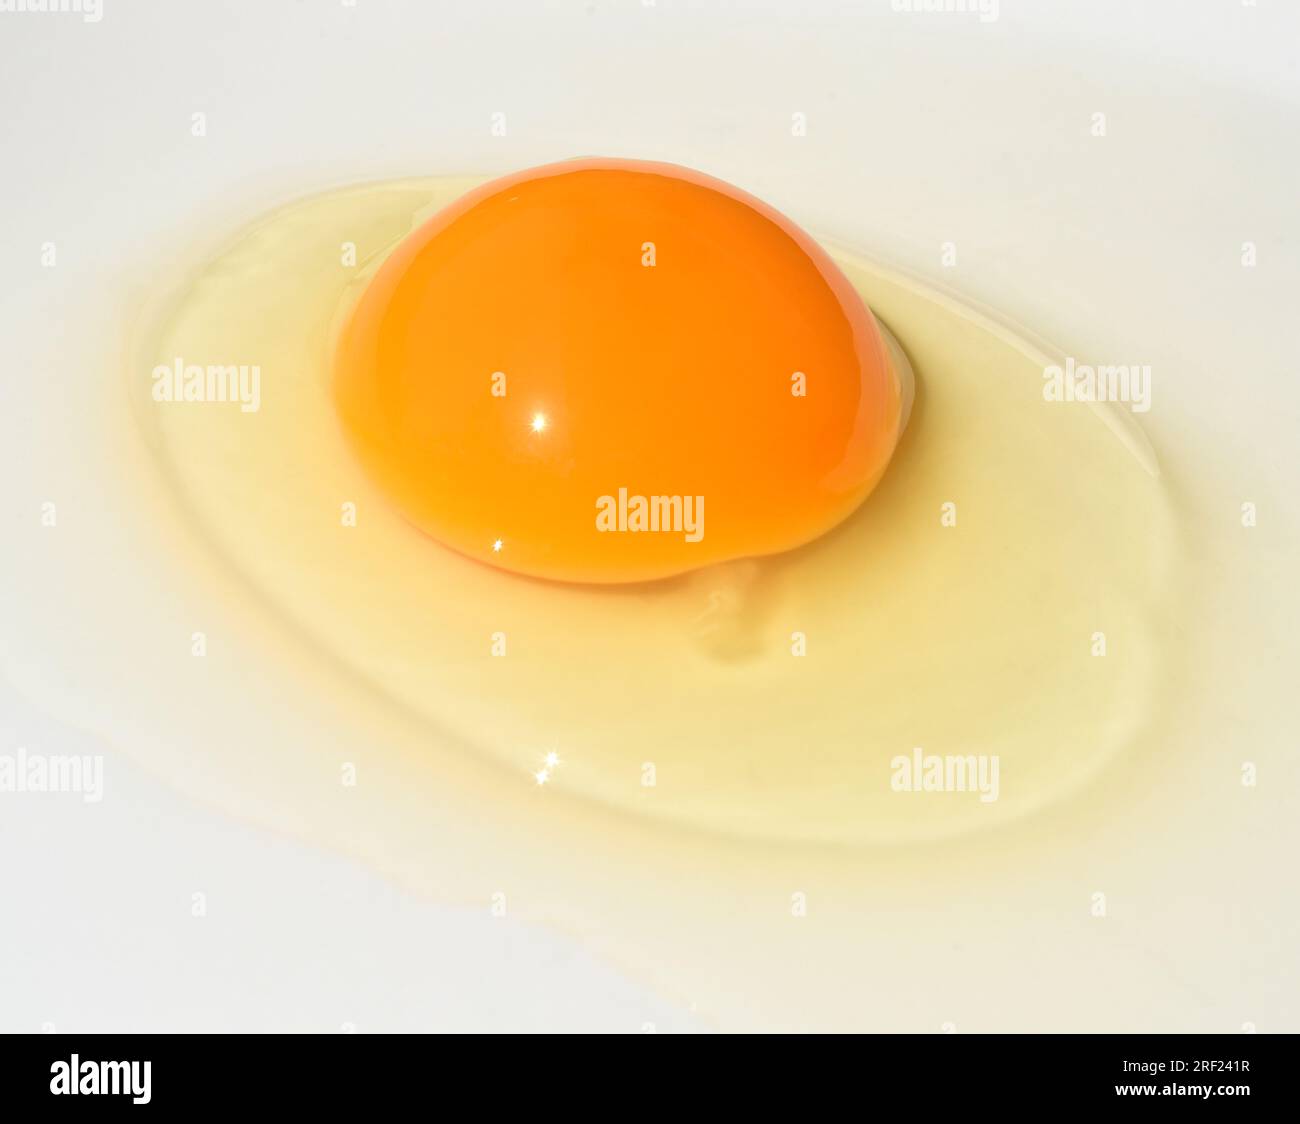 Ei, Huehnerei bzw. Eier ist ein wichtiges tierisches Lebensmittel. Eier, Hühnereier oder Eier sind ein wichtiges Tierfutter. Stockfoto